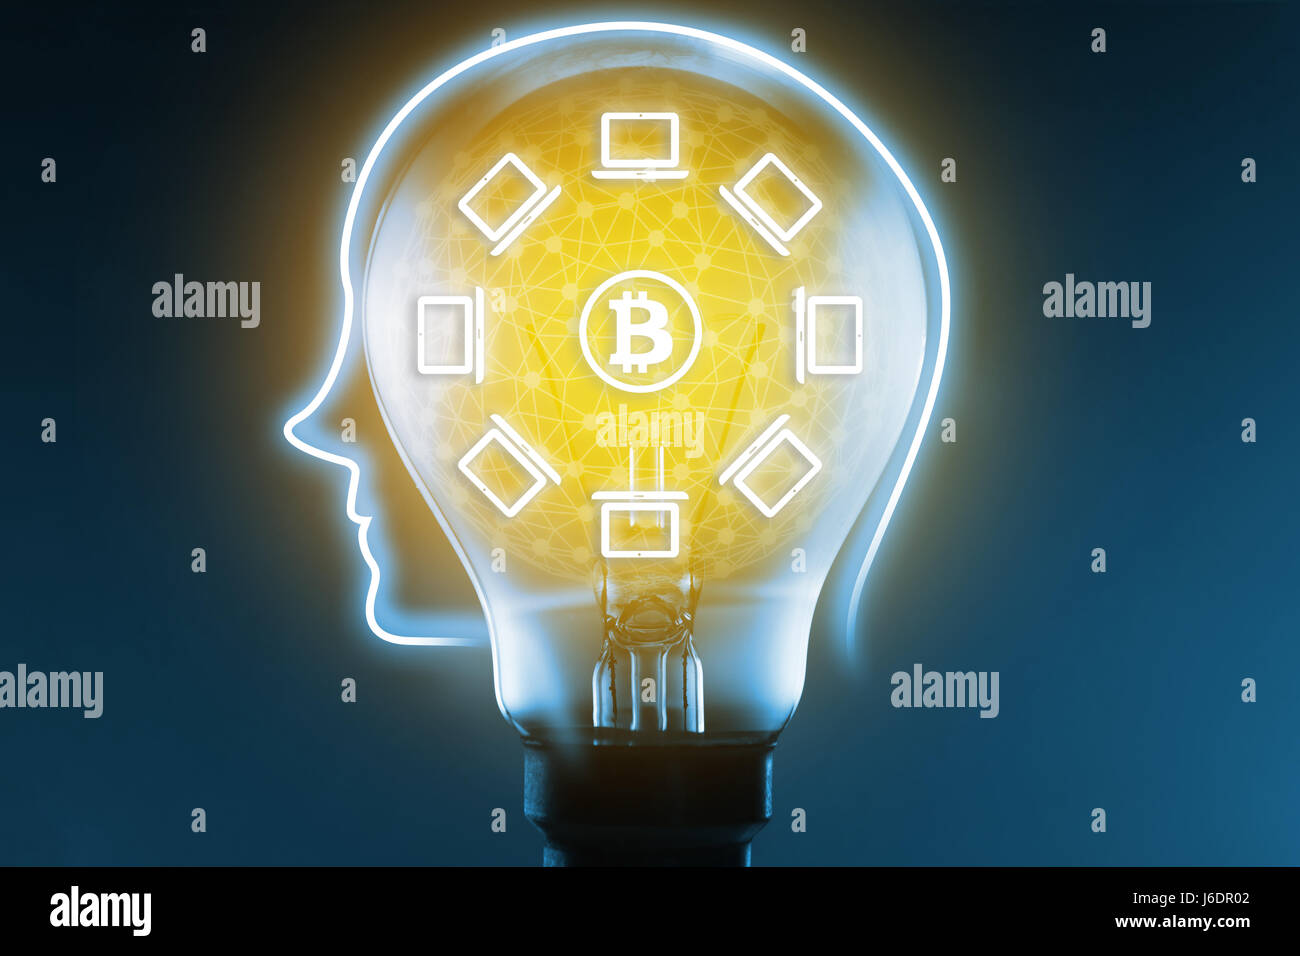 Blockchain concept réseau bitcoin et icônes, ampoule et réseau informatique se connecter sur fond bleu. Grand livre distribué la technologie. Banque D'Images